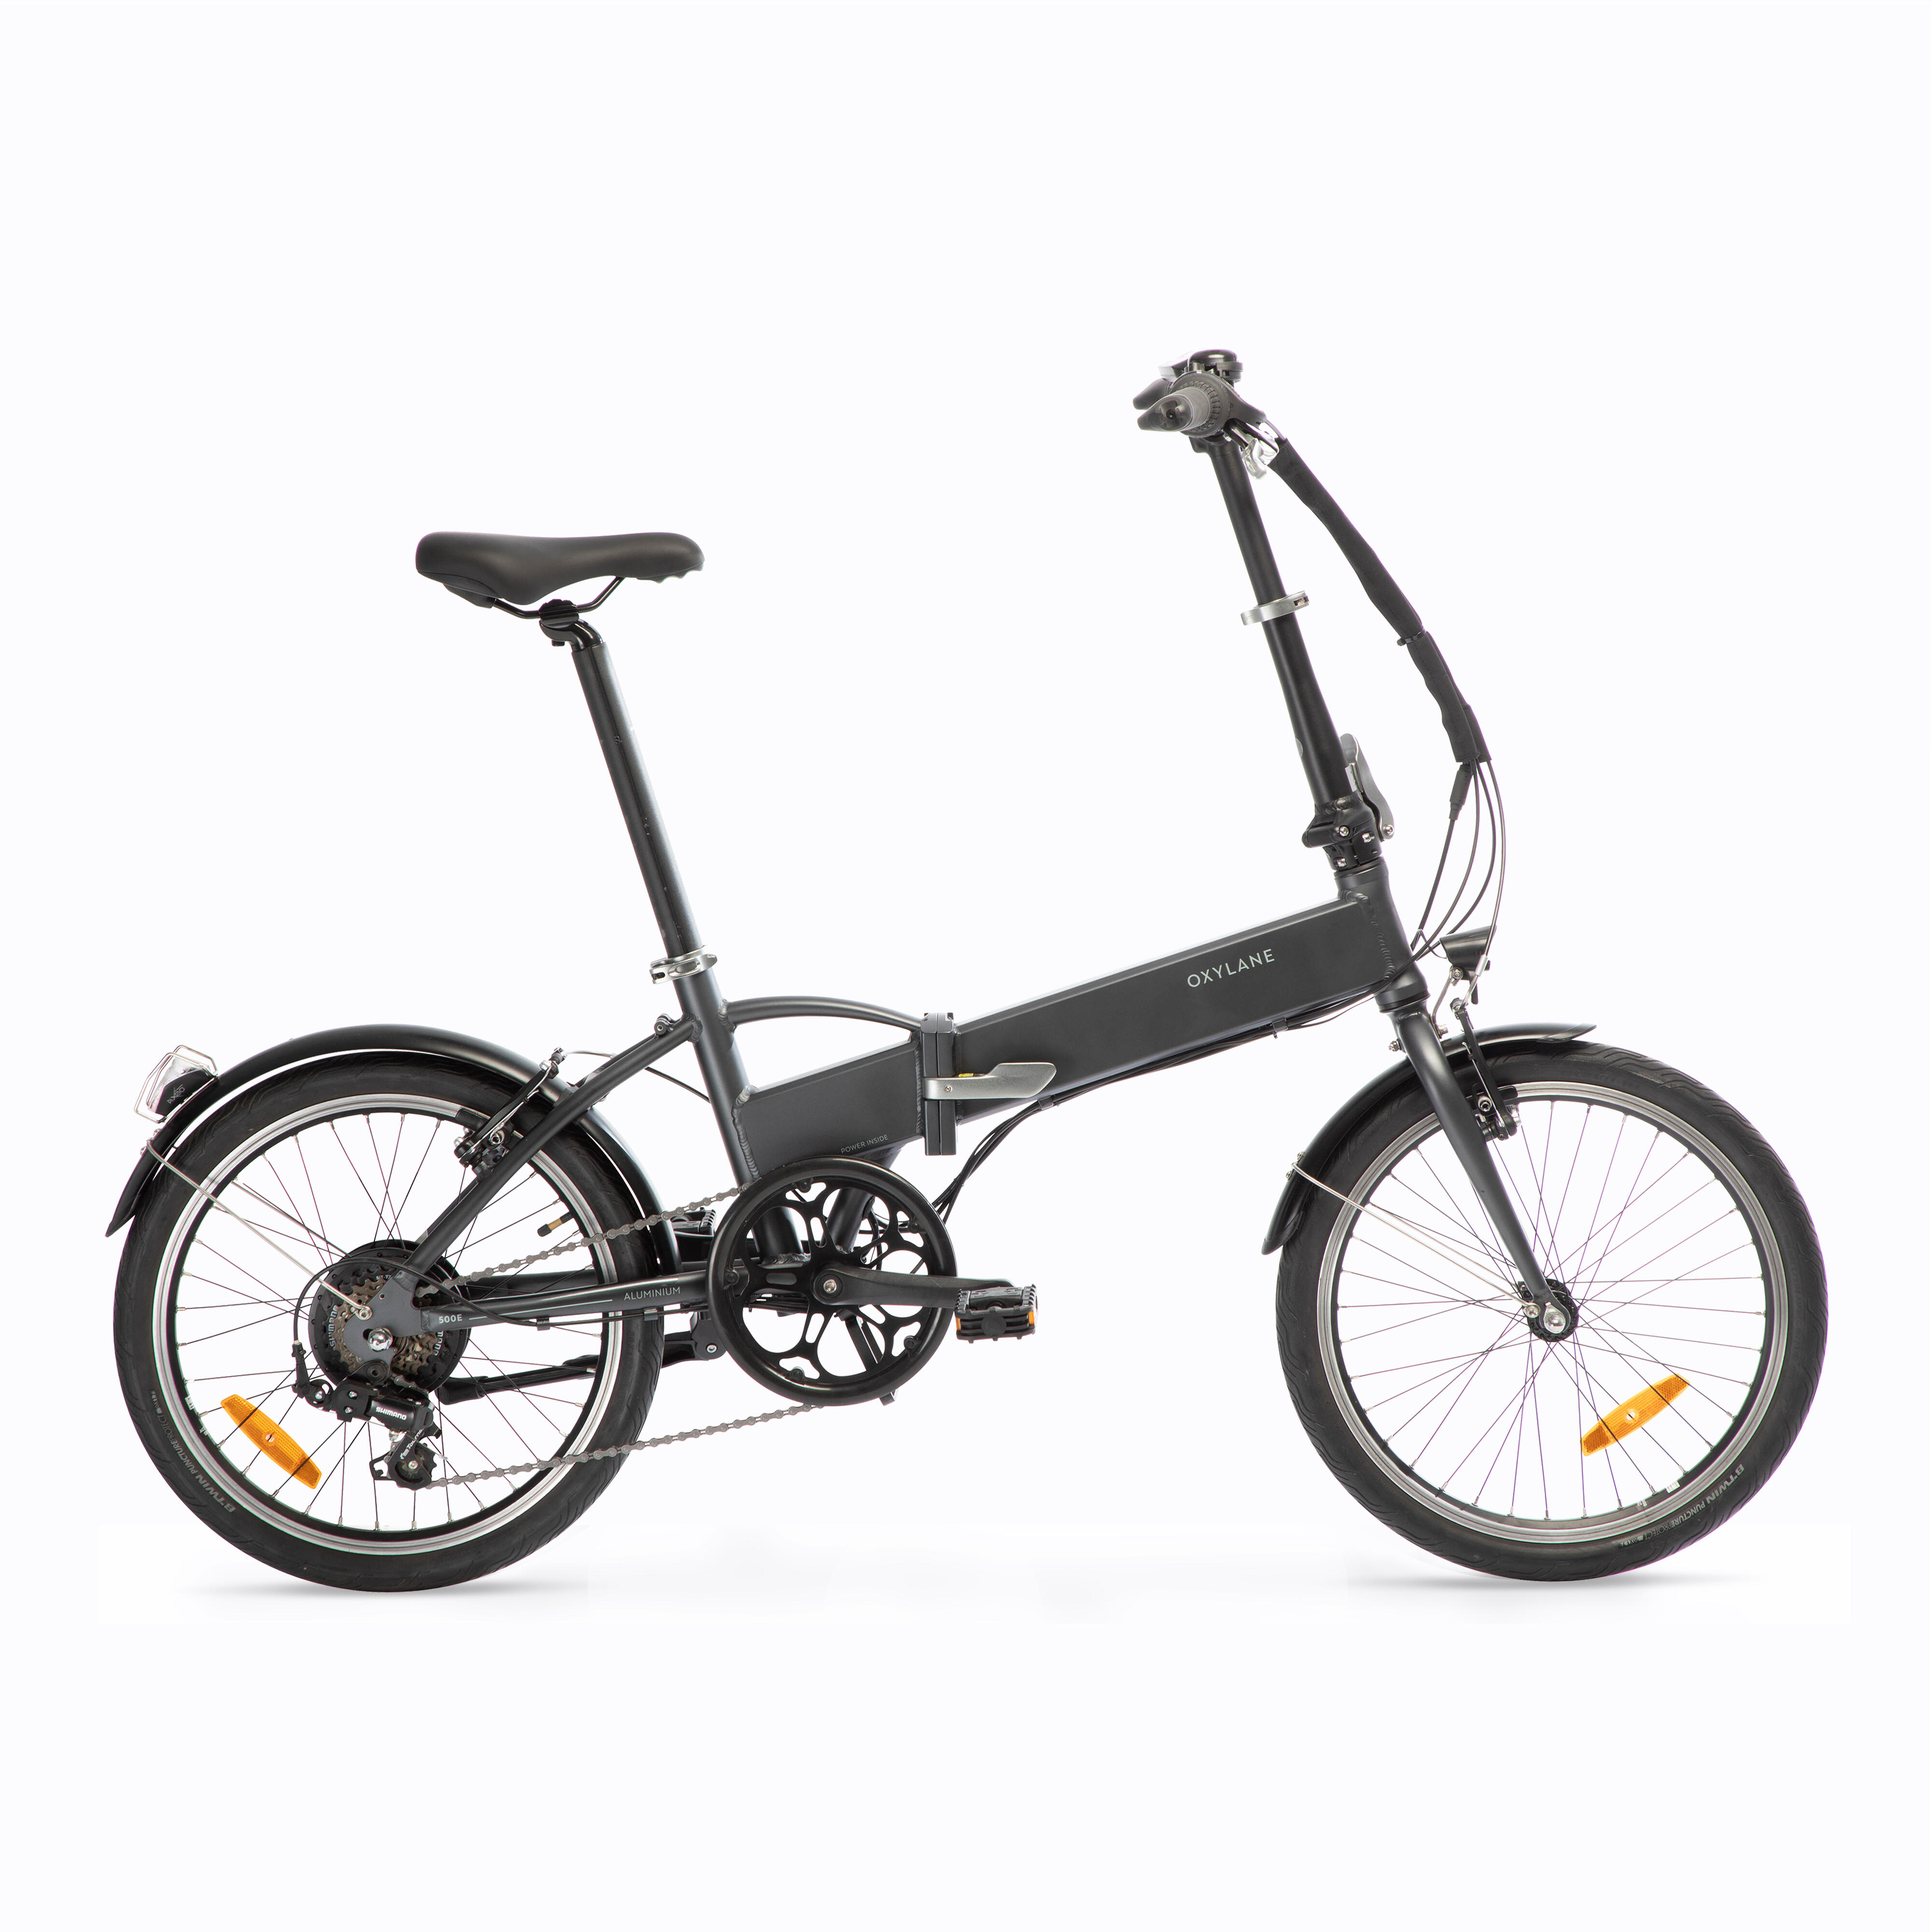 Bicicletă pliabilă cu asistență electrică TILT 500 E Gri-Negru La Oferta Online BTWIN imagine La Oferta Online